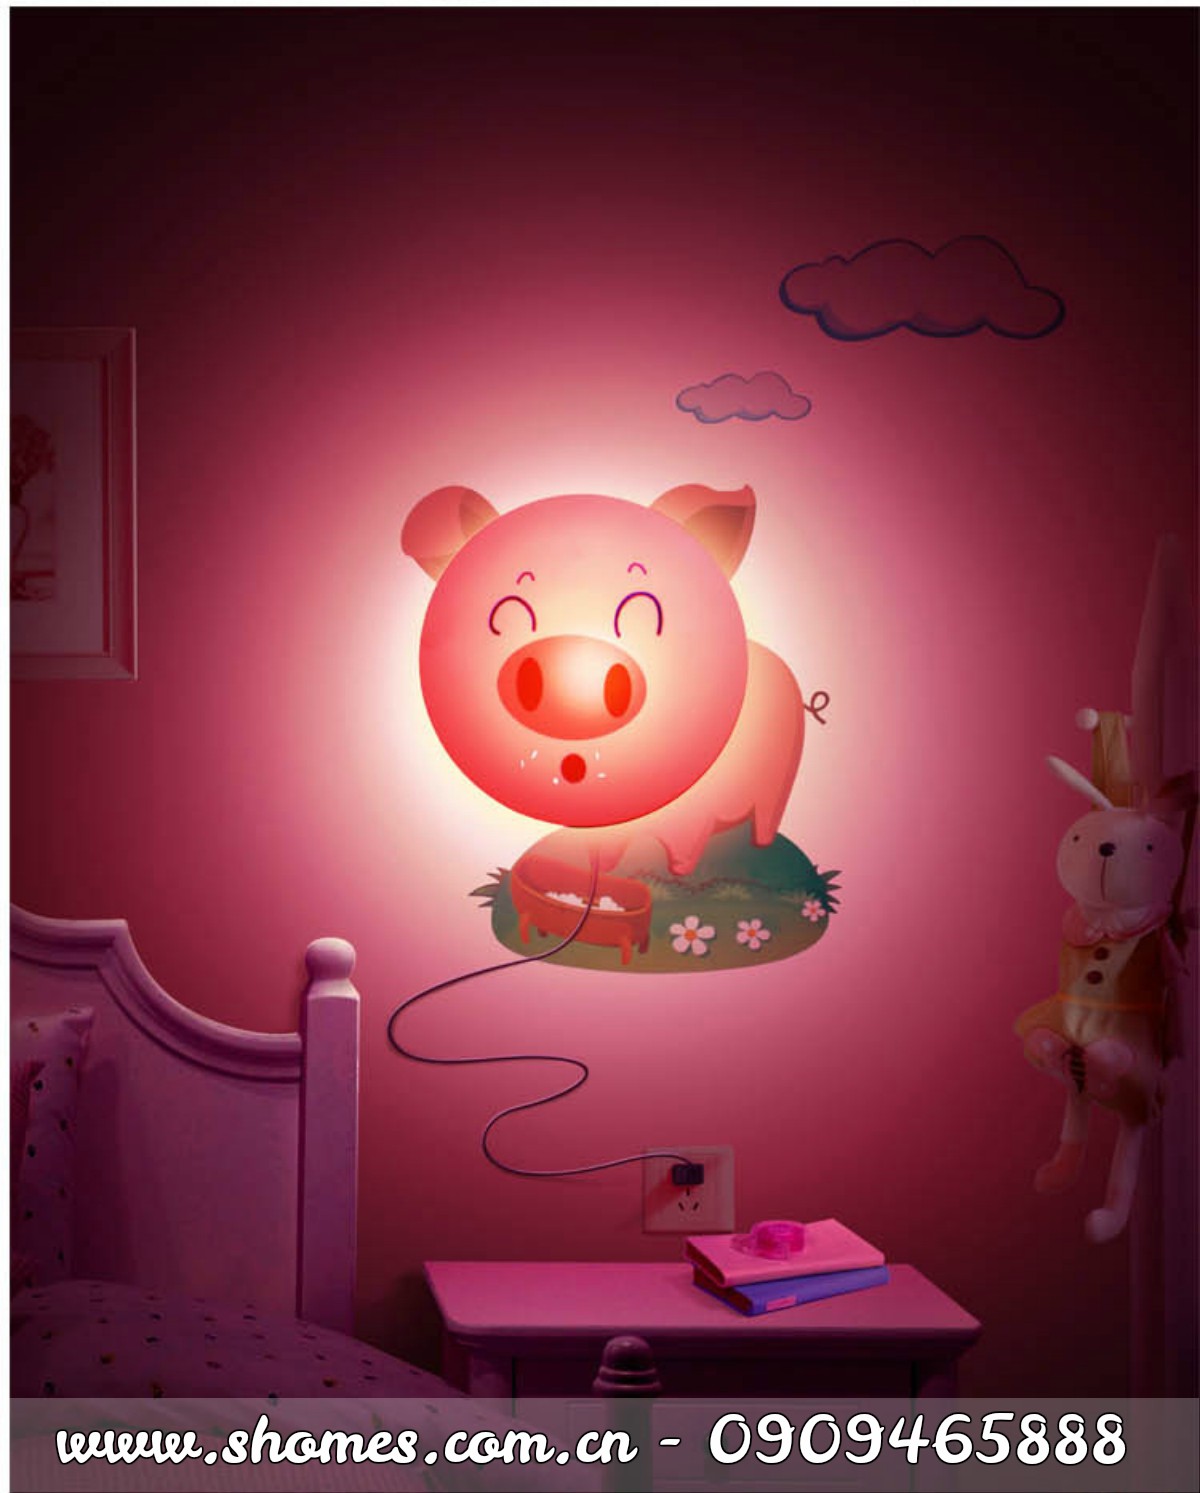 ĐÈN NGỦ DÁN TƯỜNG 3D NGỘ NGHĨNH CHO BÉ, Đèn ngủ cho bé, phòng trẻ em, đèn ngủ dễ thương, đèn ngủ treo tường, đèn ngủ 3D